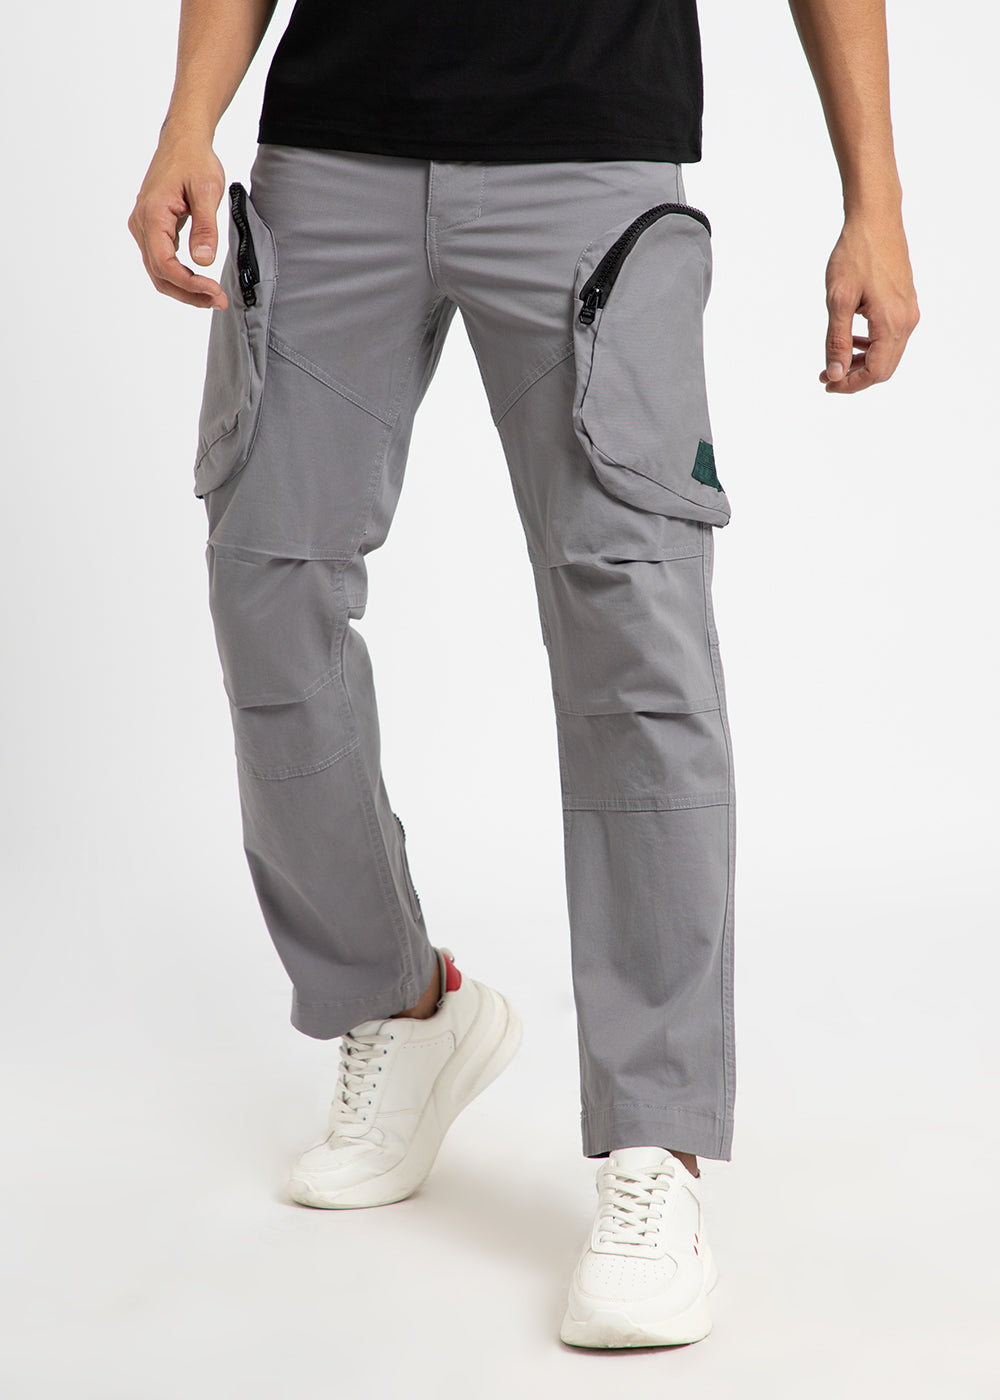 Oslo Gray Zipper Cargo Pant